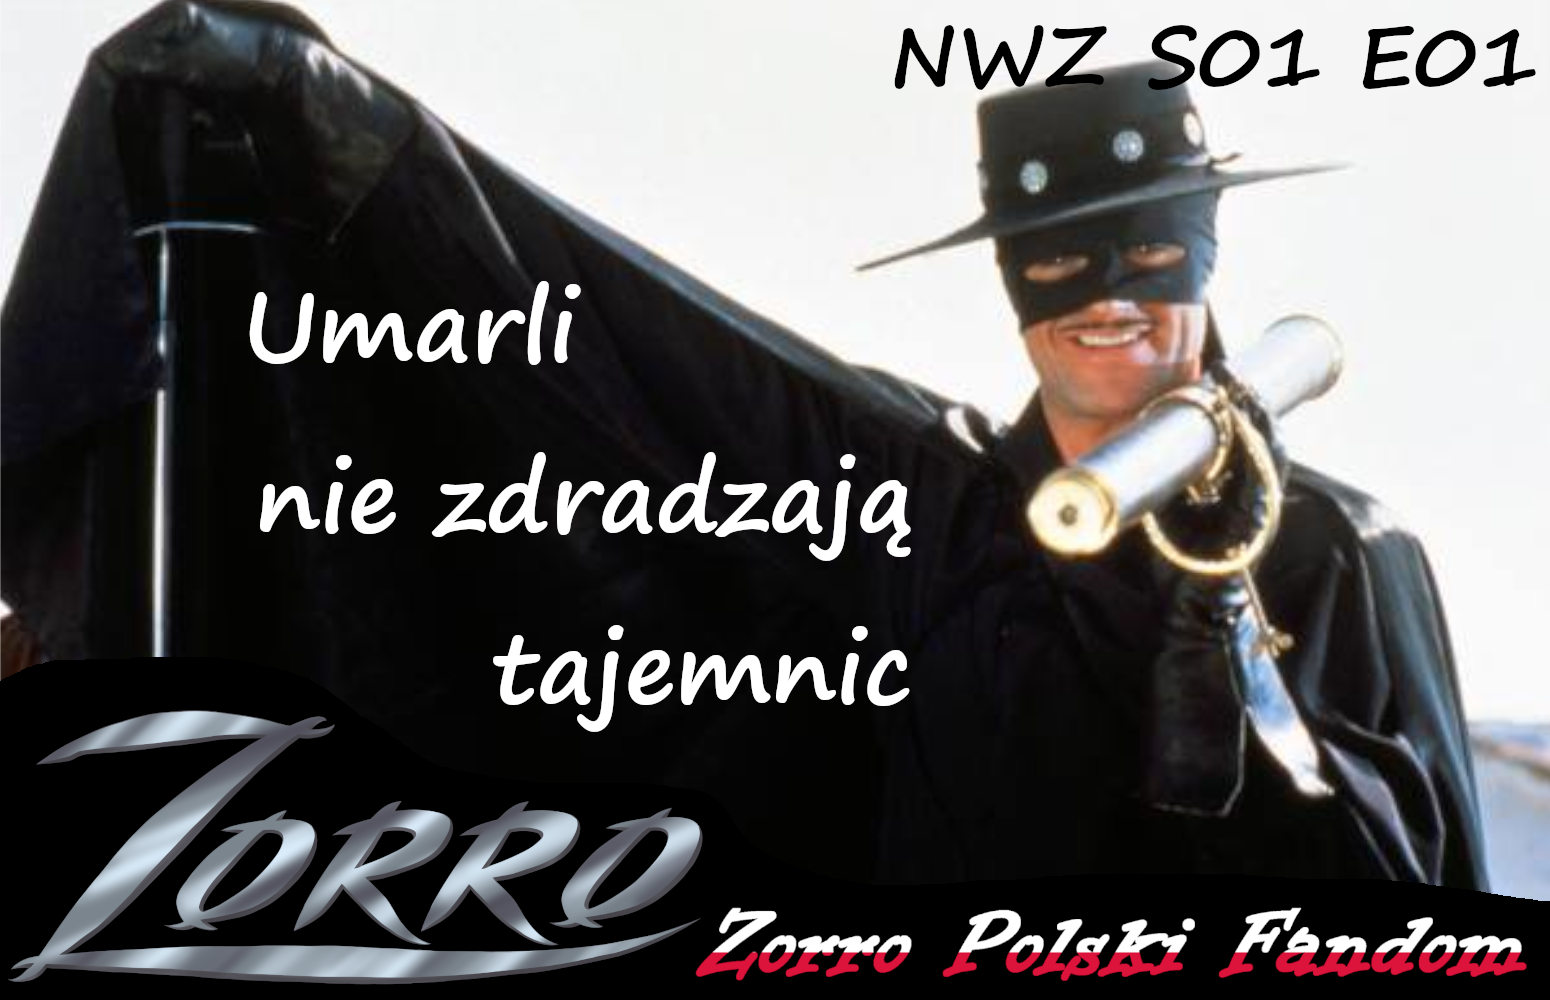 New World Zorro S1E1 Umarli nie zdradzają tajemnic